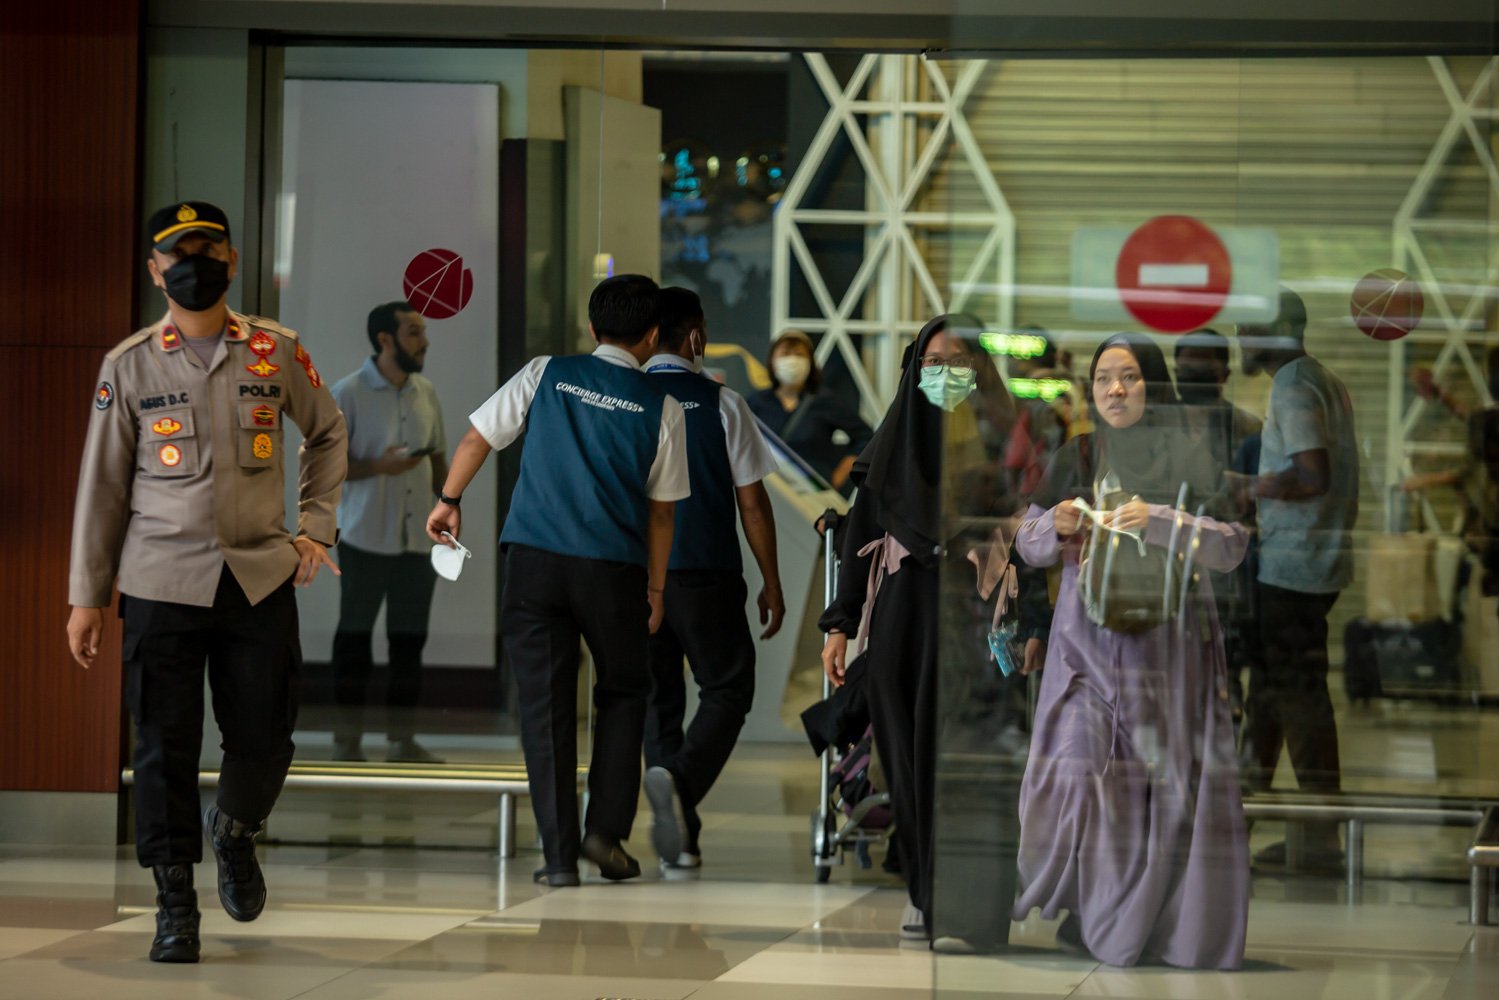 Sejumlah warga negara Indonesia (WNI) asal Sudan tiba di Bandara Soekarno Hatta, Jumat (28/4). Sebanyak 385 WNI dievakuasi akibat konflik bersenjata yang terjadi di Sudan terdiri dari 248 perempuan, 137 laki-laki, dan 43 anakanak. Sebagian besar adalah mahasiswa Indonesia, pekerja migran Indonesia, karyawan perusahaan dan staf KBRI.